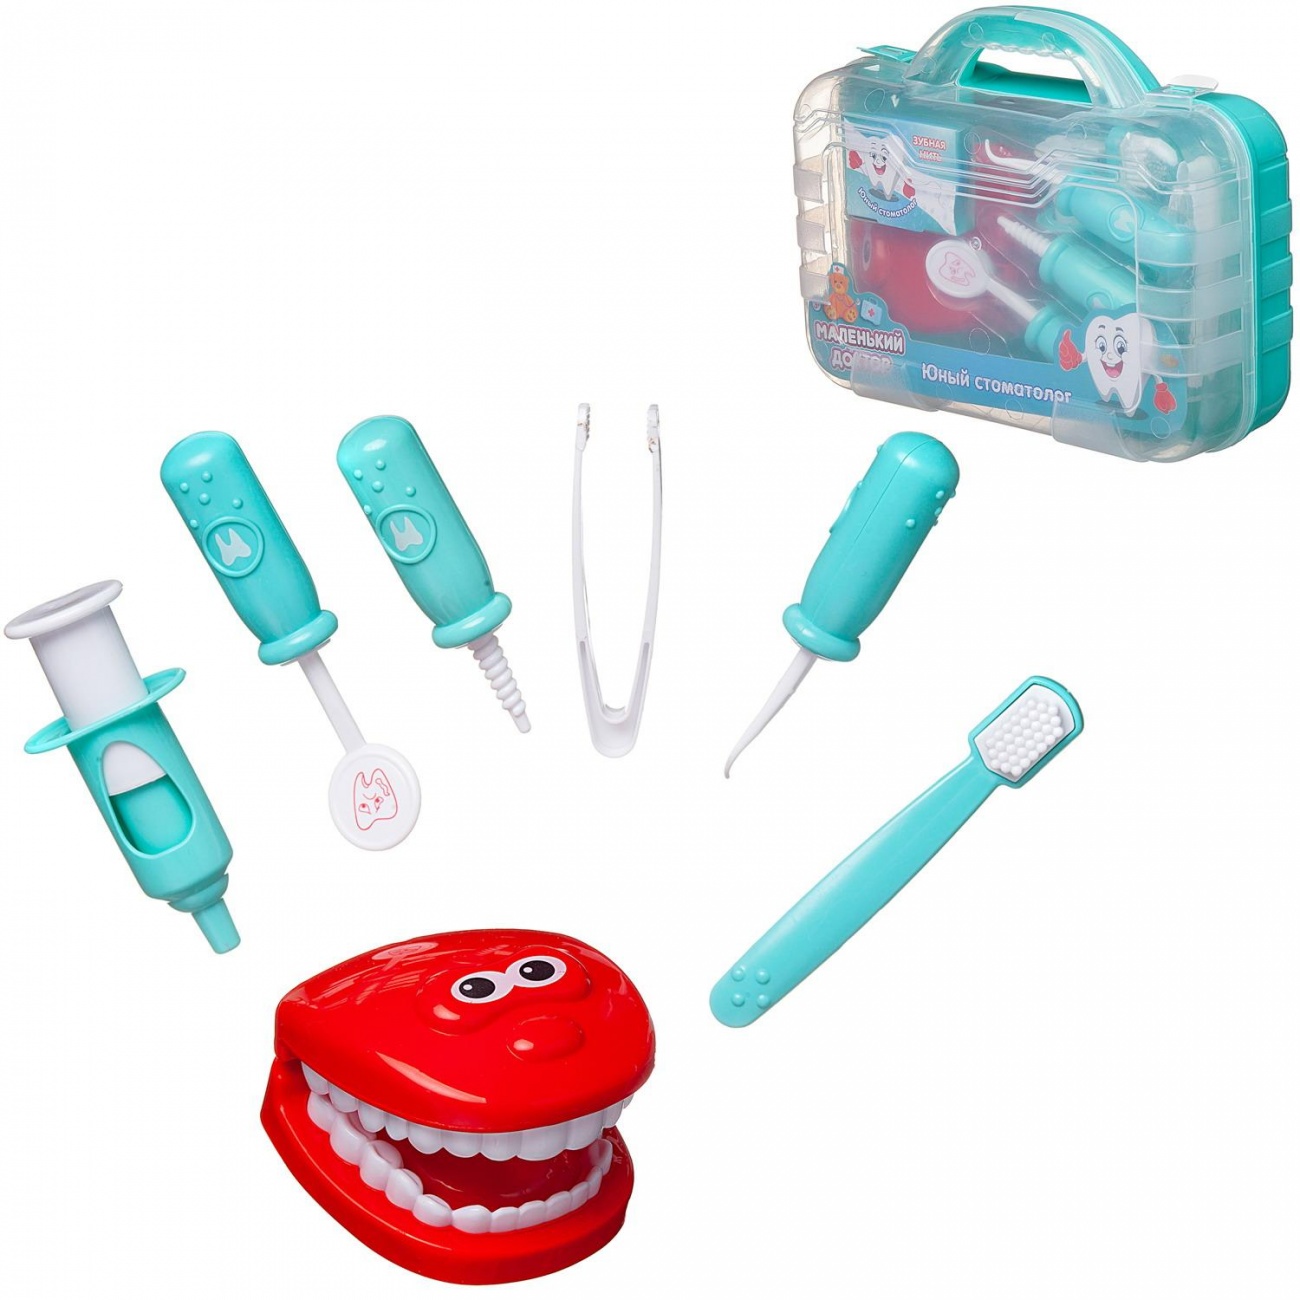 Игровой набор ABtoys Маленький доктор Юный стоматолог, в чемоданчике PT-01498